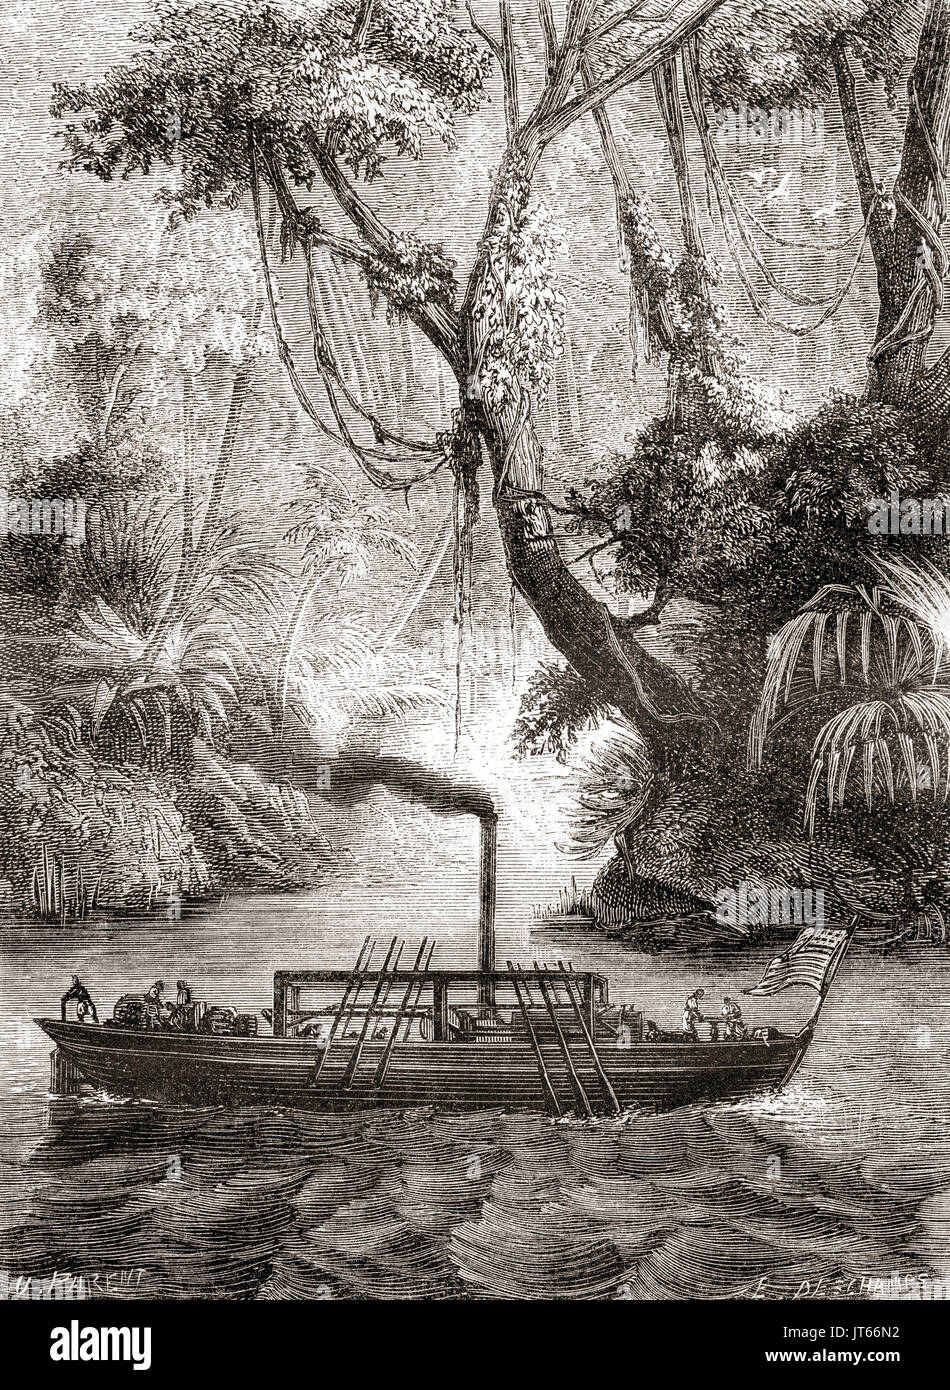 Le premier essai réussi de John Fitch's steamboat persévérance sur la rivière Delaware, l'Amérique, le 22 août 1787. De : Les merveilles de la science, publié en 1870. Banque D'Images